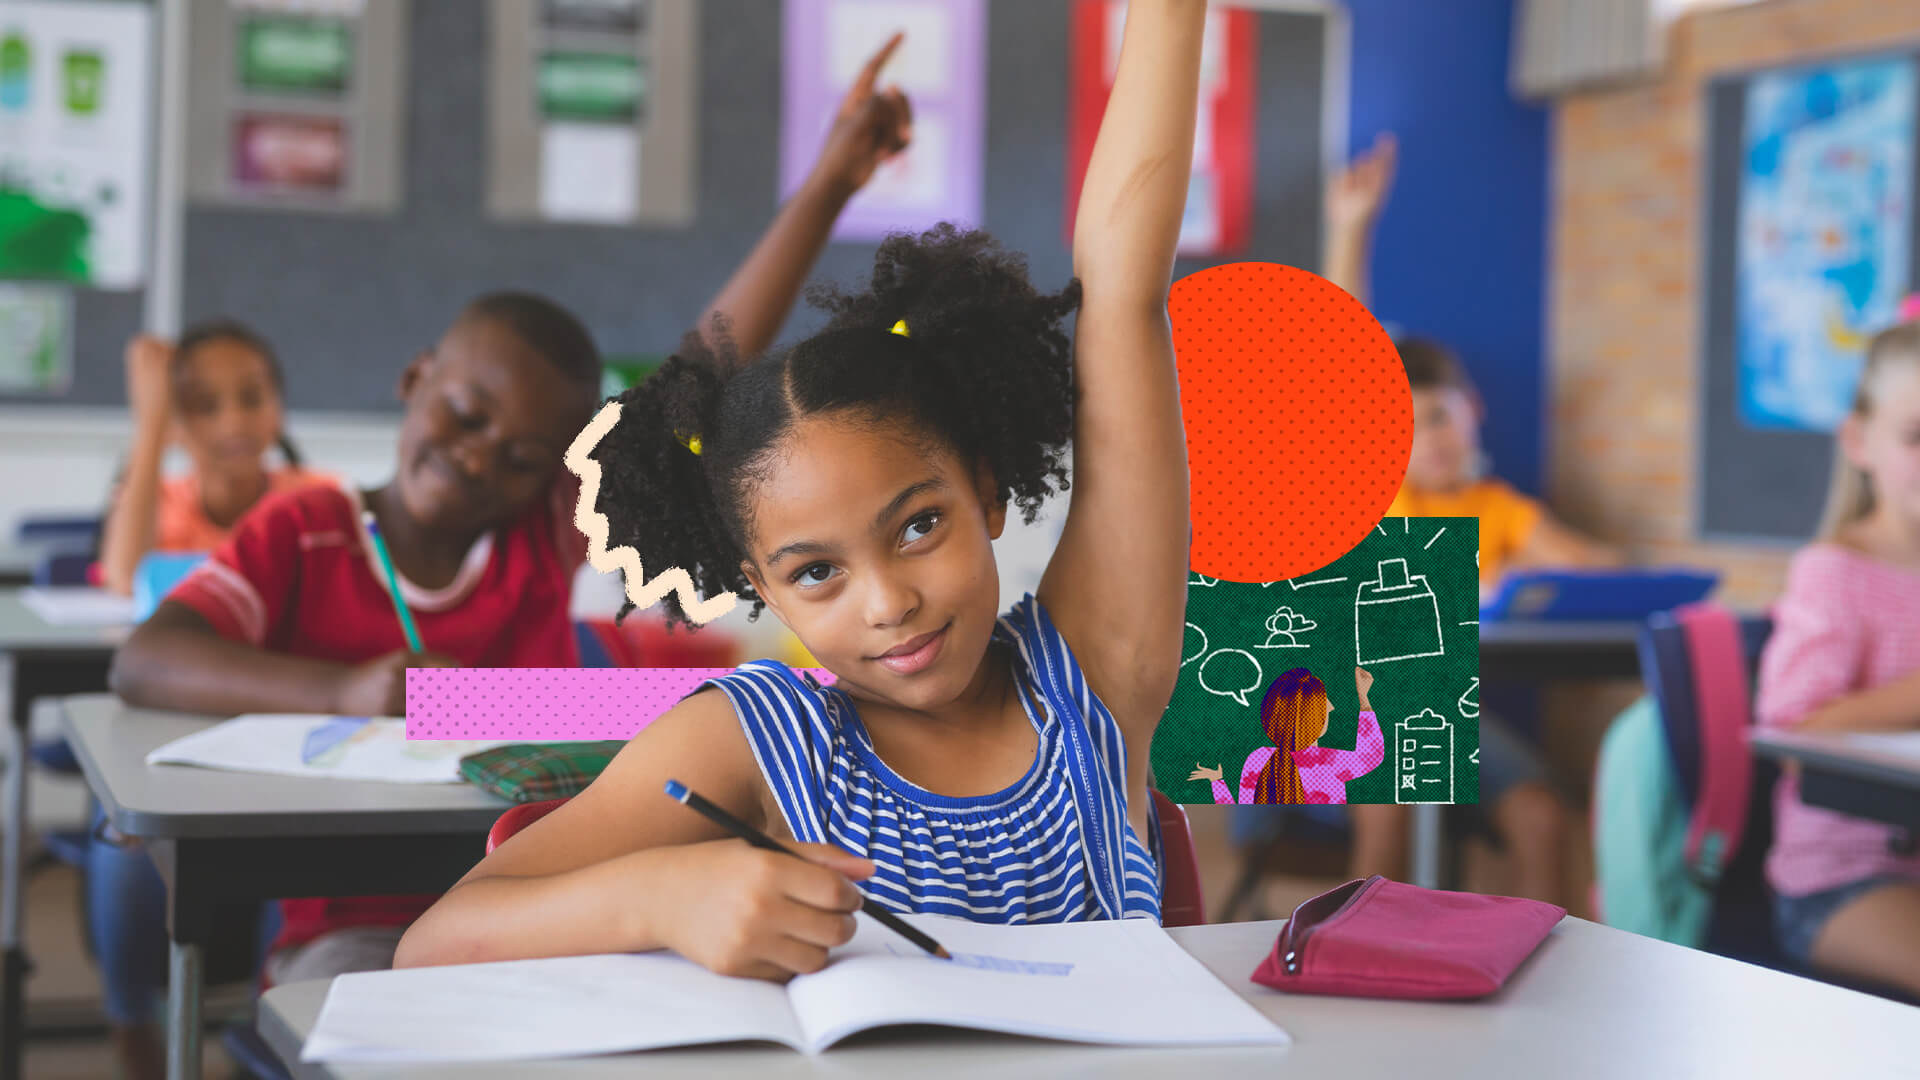 Na imagem, uma menina negra levanta o braço, se preparando para fazer uma pergunta na sala de aula. A imagem possui intervenções de rabiscos coloridos.